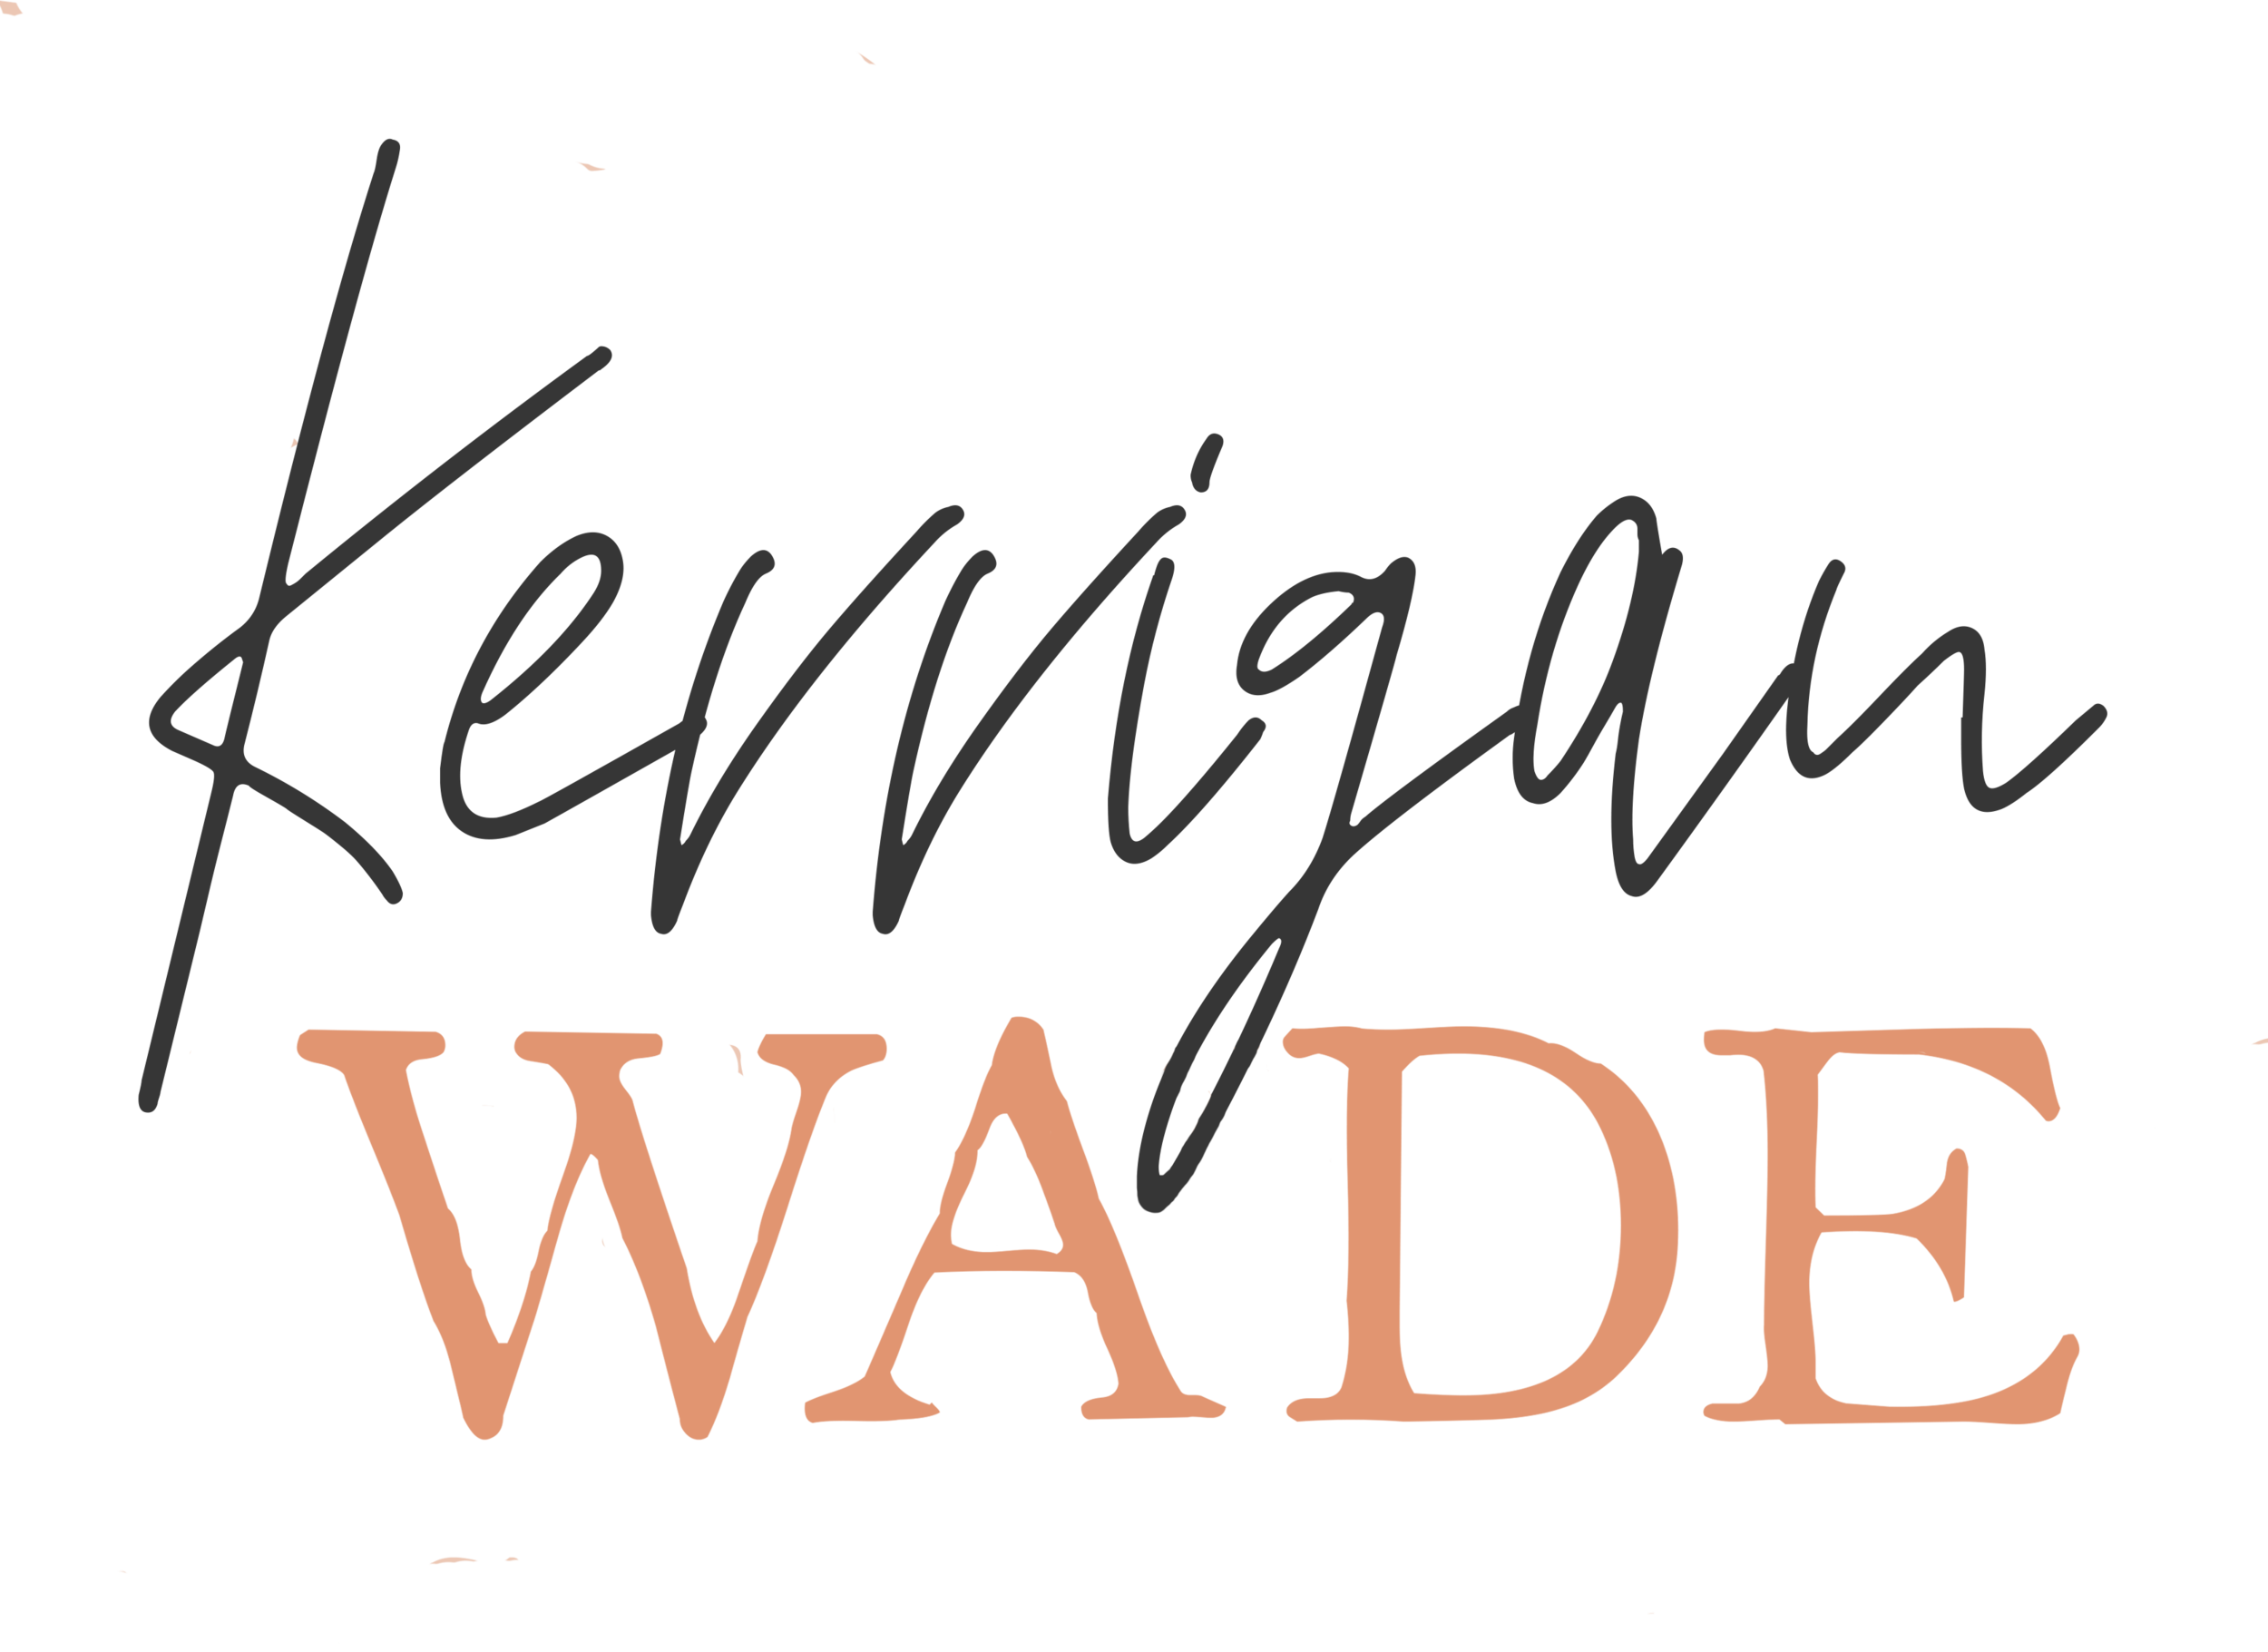 Kerrigan Wade